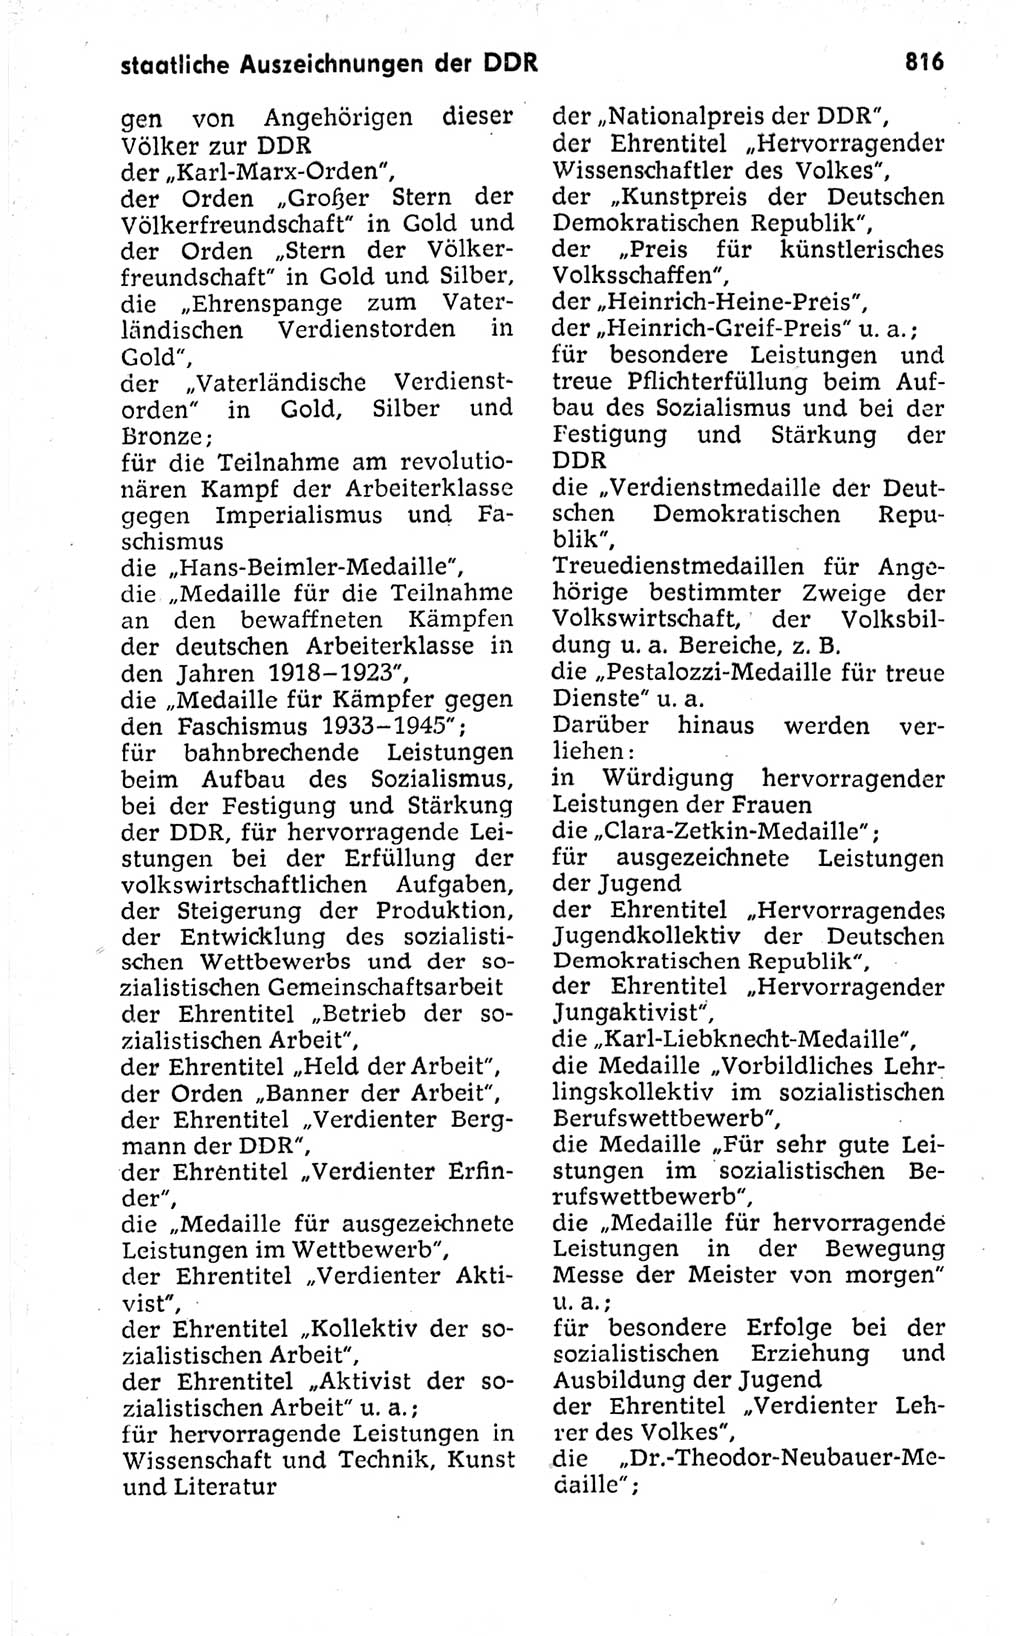 Kleines politisches Wörterbuch [Deutsche Demokratische Republik (DDR)] 1973, Seite 816 (Kl. pol. Wb. DDR 1973, S. 816)